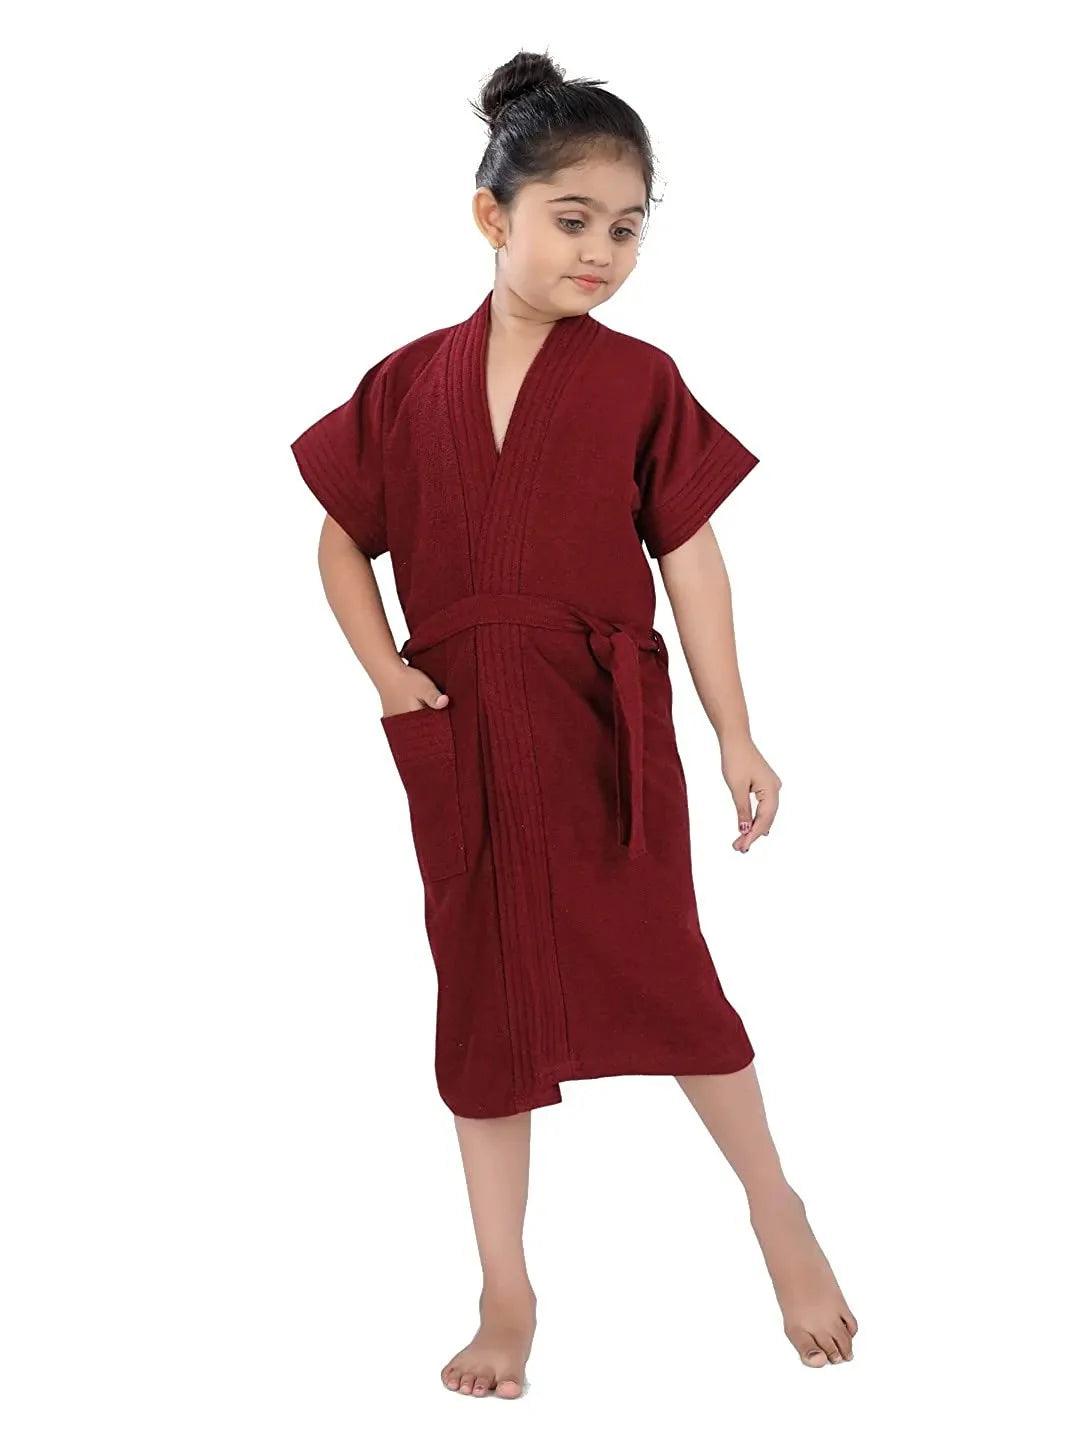 Poorak Terry Free Size Bathorbe Cum Towel Gown 7-8 years - POORAK.IN